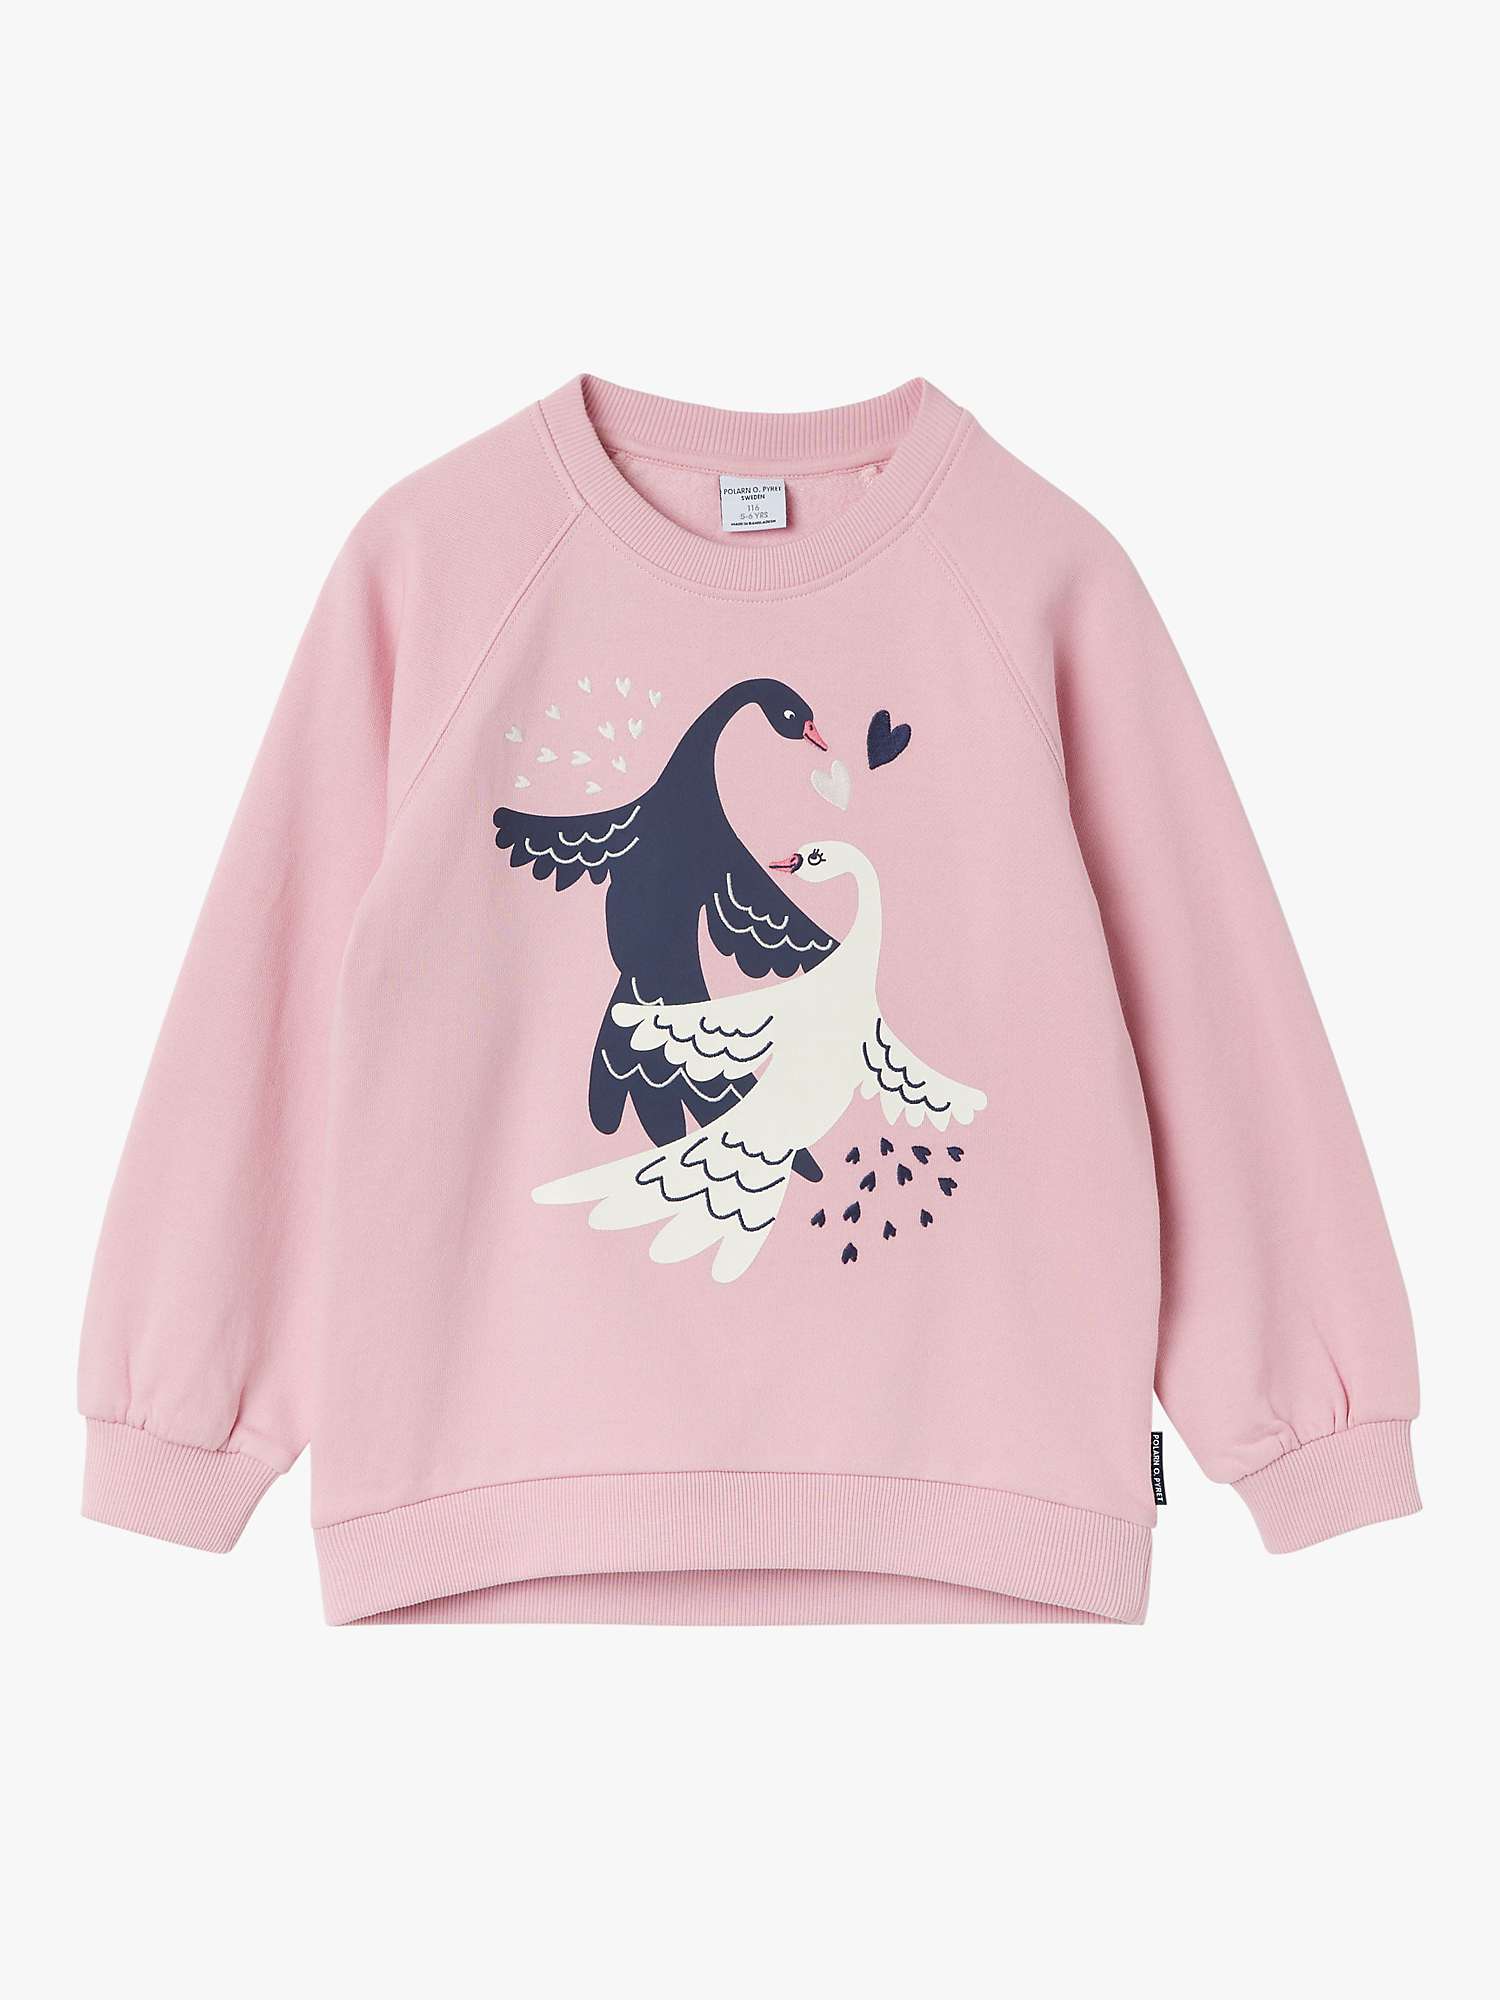 Buy Polarn O. Pyret Kids' Organic Cotton Swan Sweatshirt, Pink Online at johnlewis.com